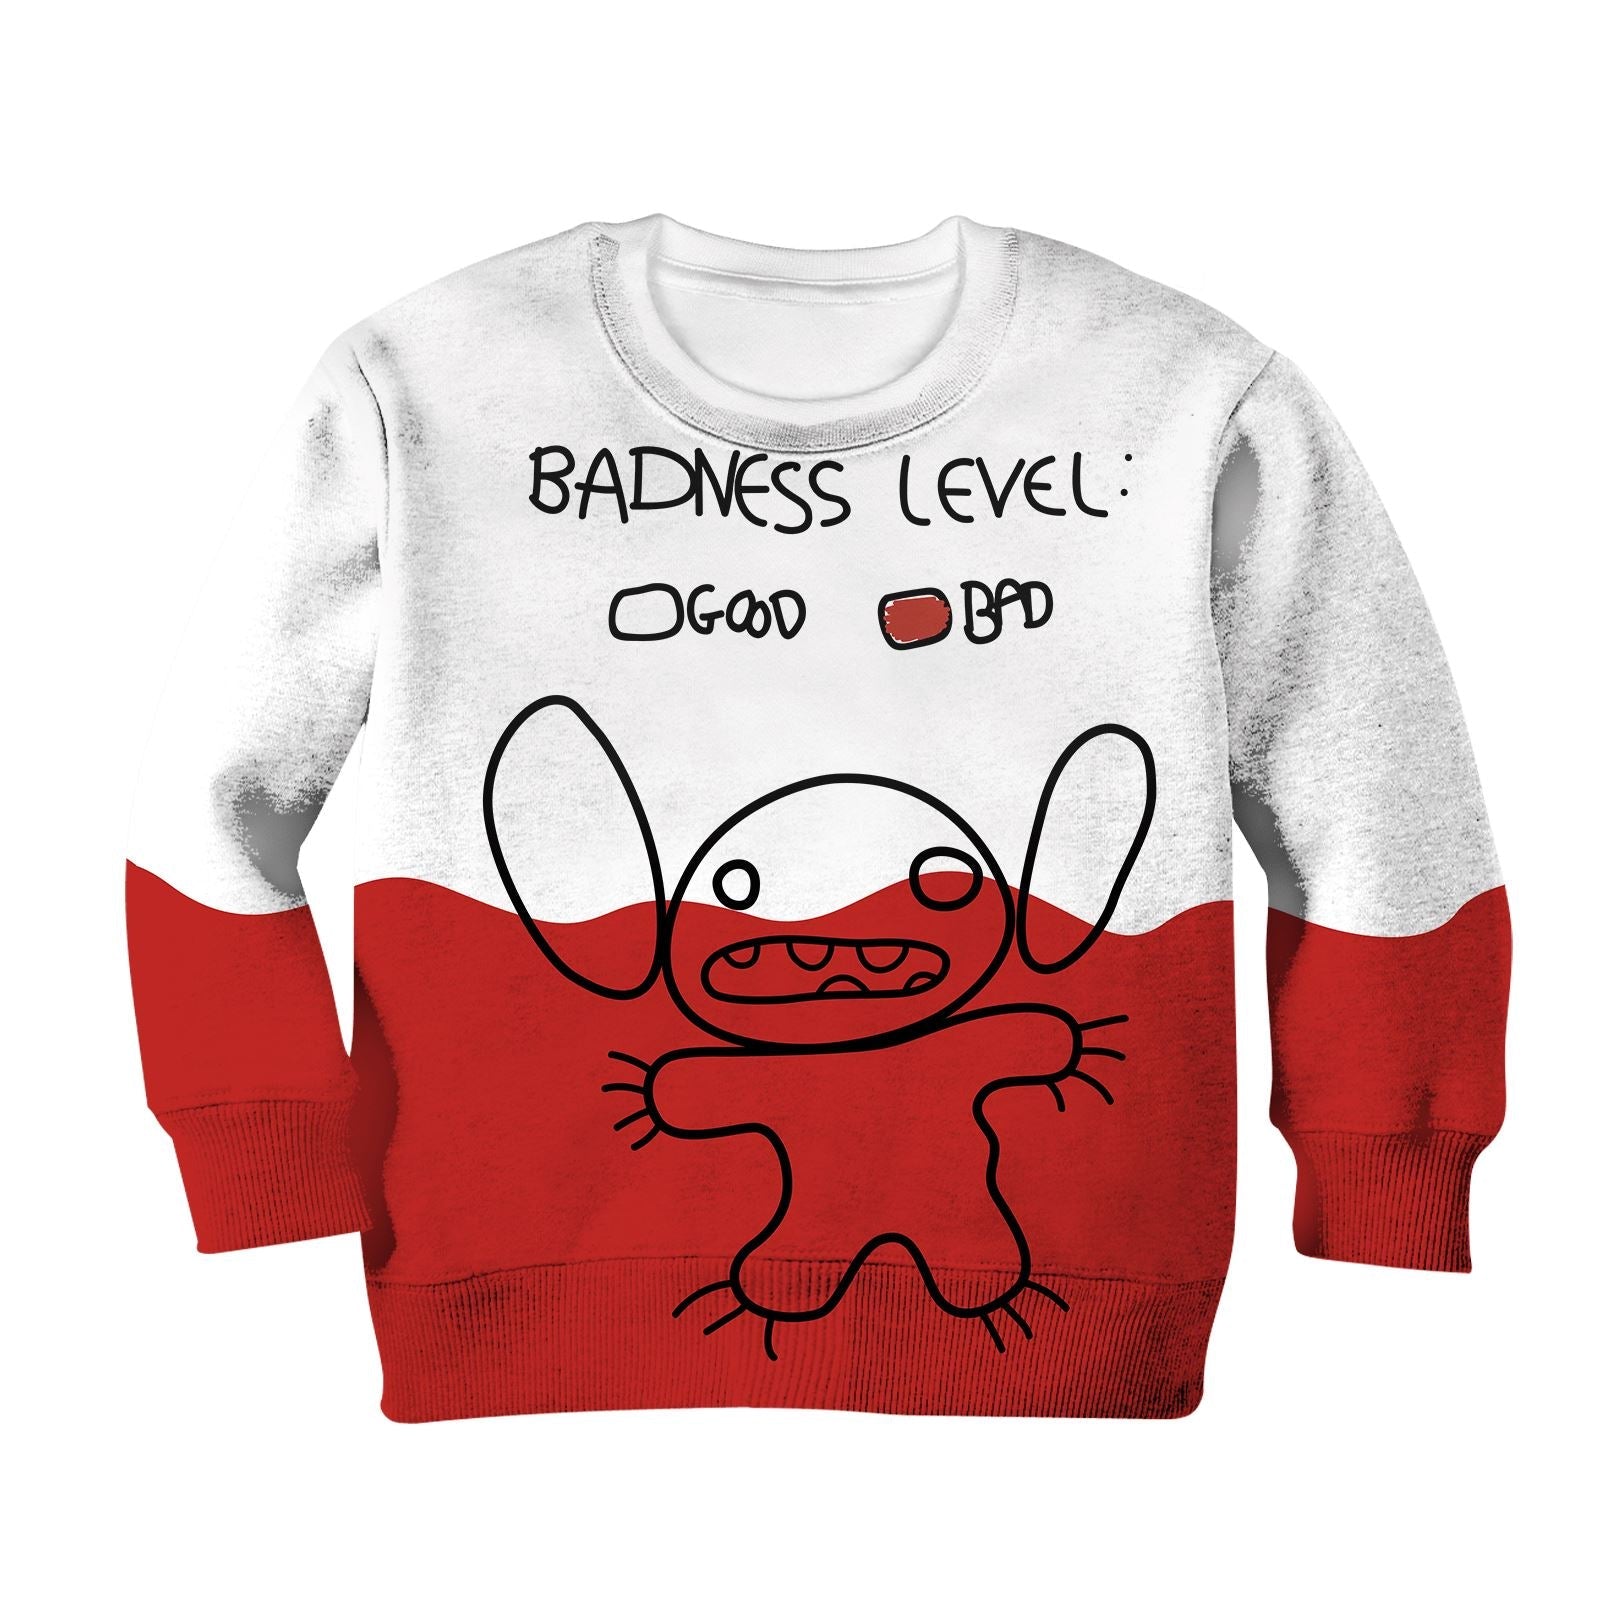 Stitch Kid Custom Hoodies T-shirt Apparel HD-MV111123K kid 3D apparel Kid Sweatshirt S/6-8 